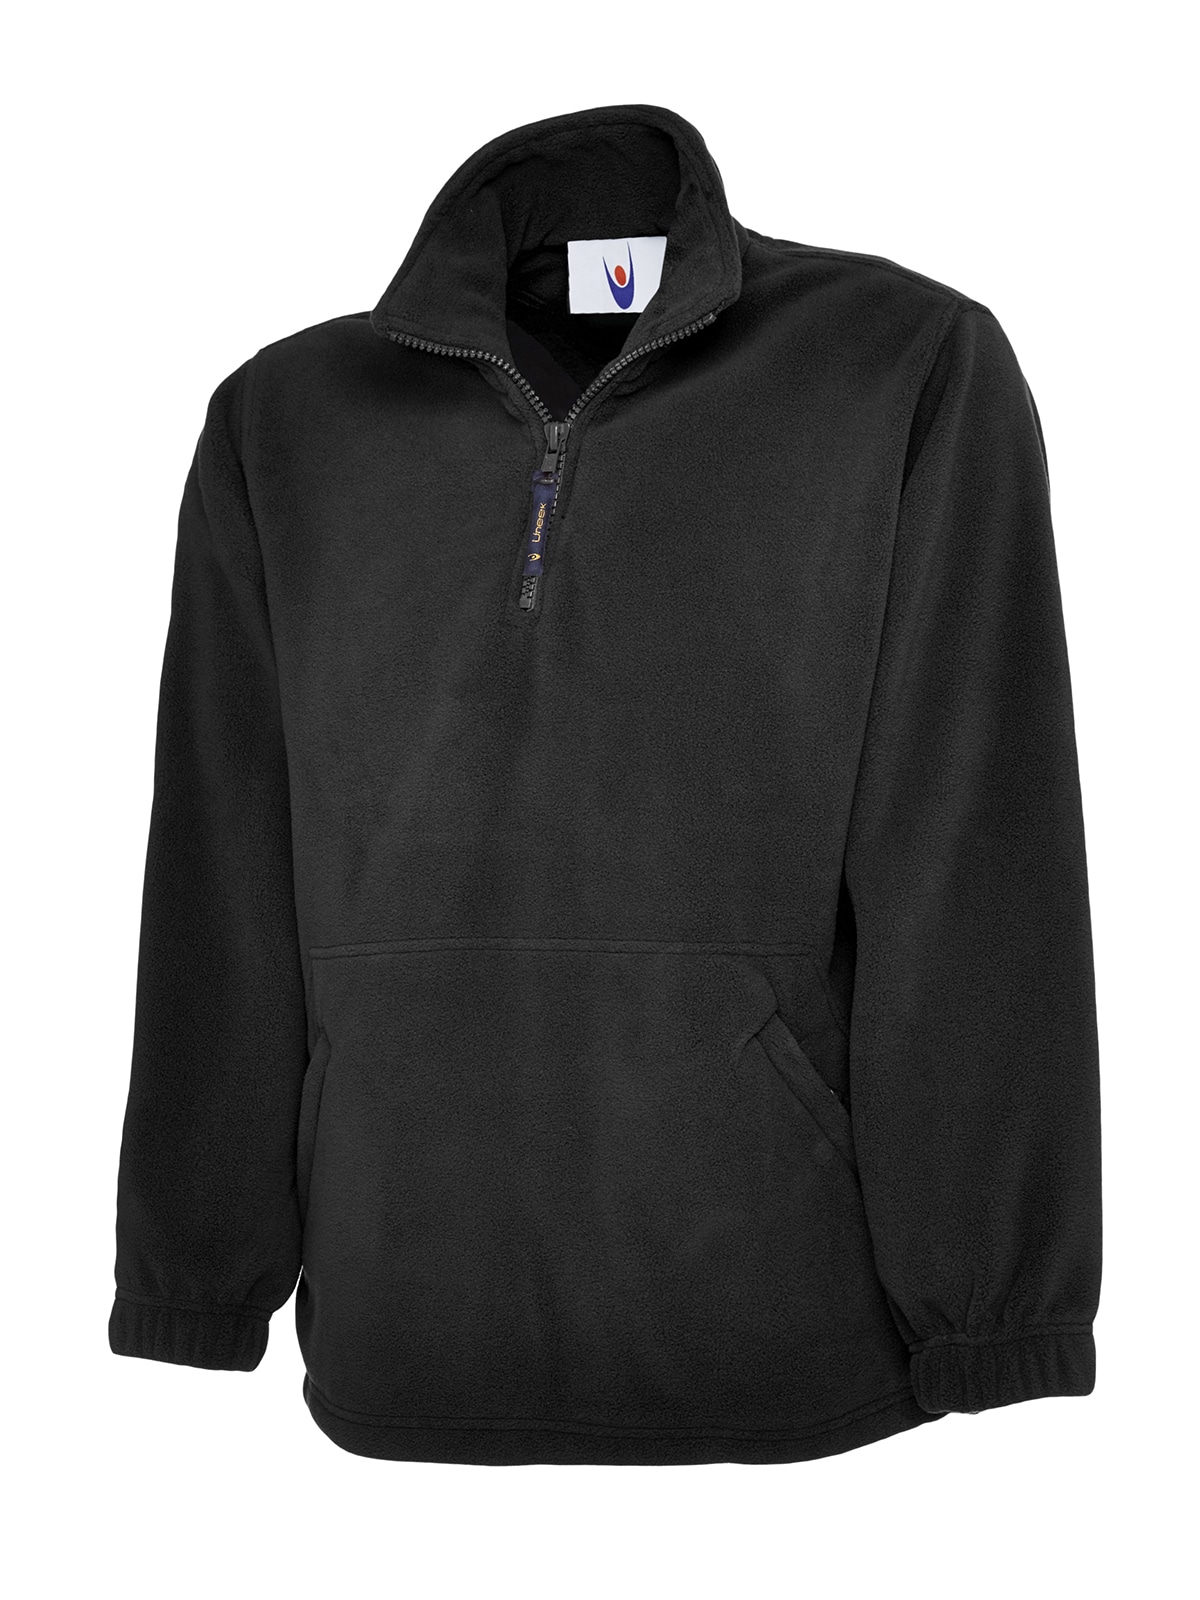 Uneek Premium Zip Micro Fleece Jacket | Essential Workwear